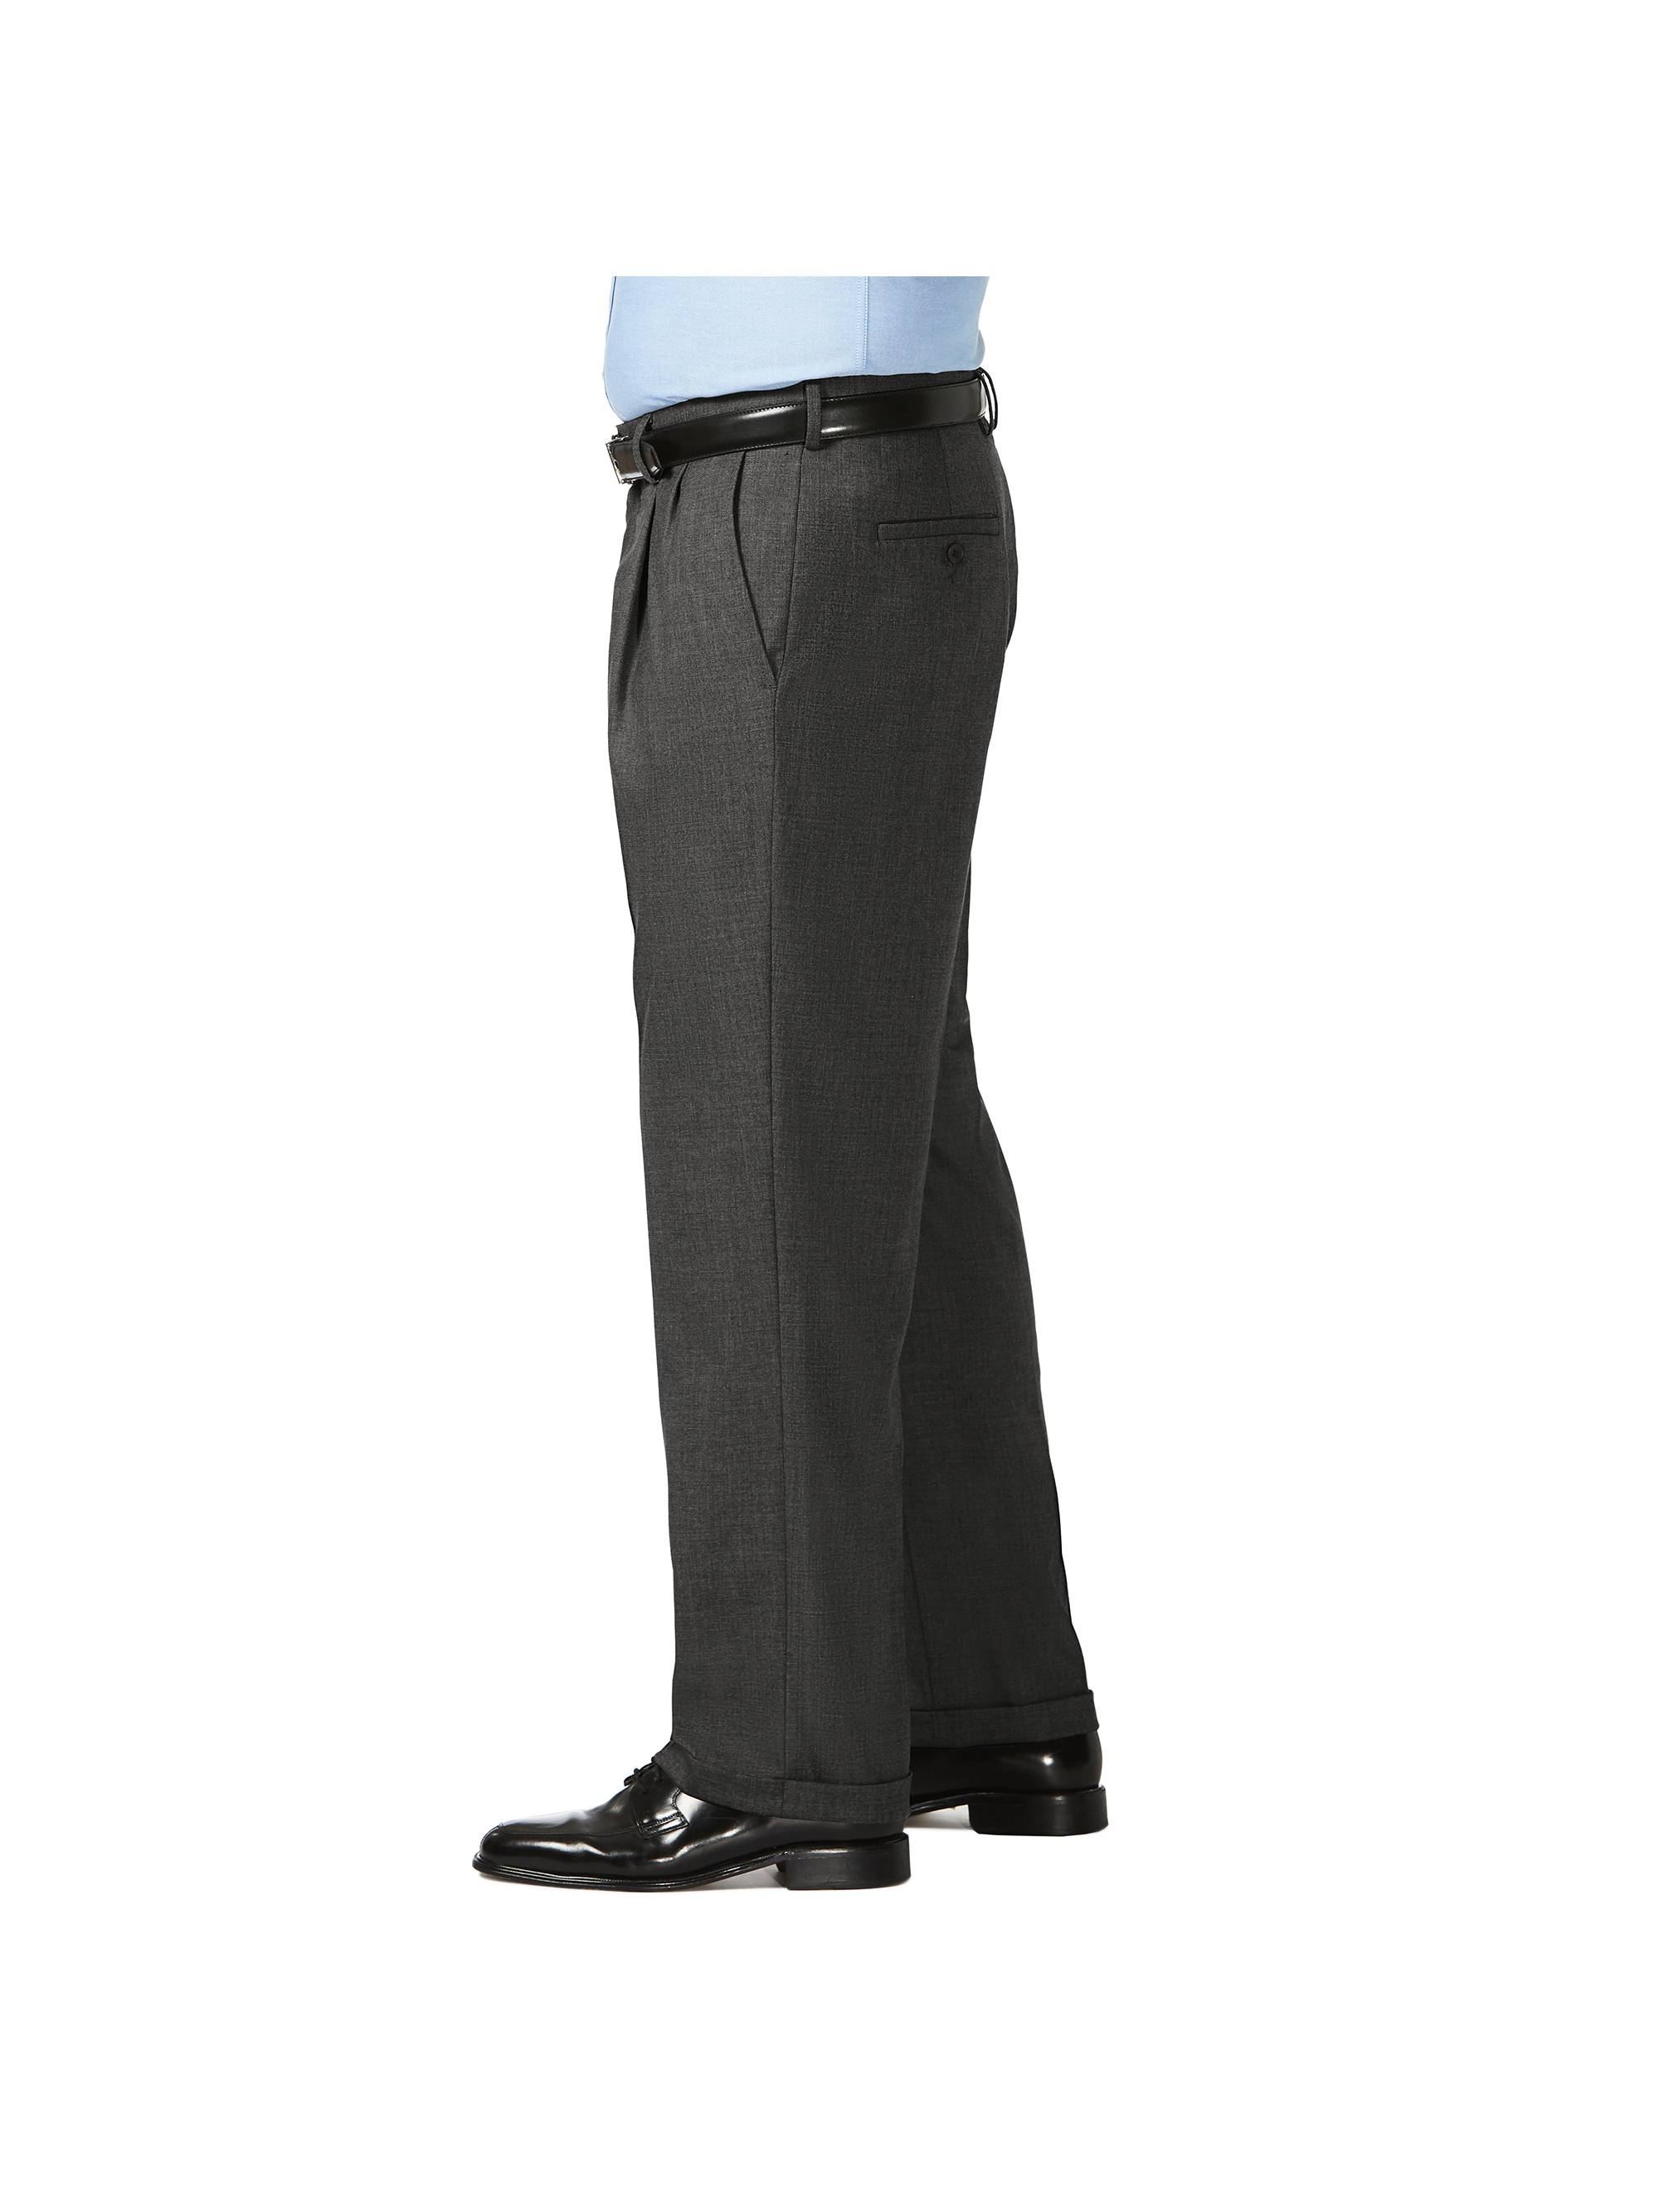 JM Haggar Men's Big & Tall Sharkskin Pleat Front Dress Pant  Classic Fit HD90654 - image 2 of 9